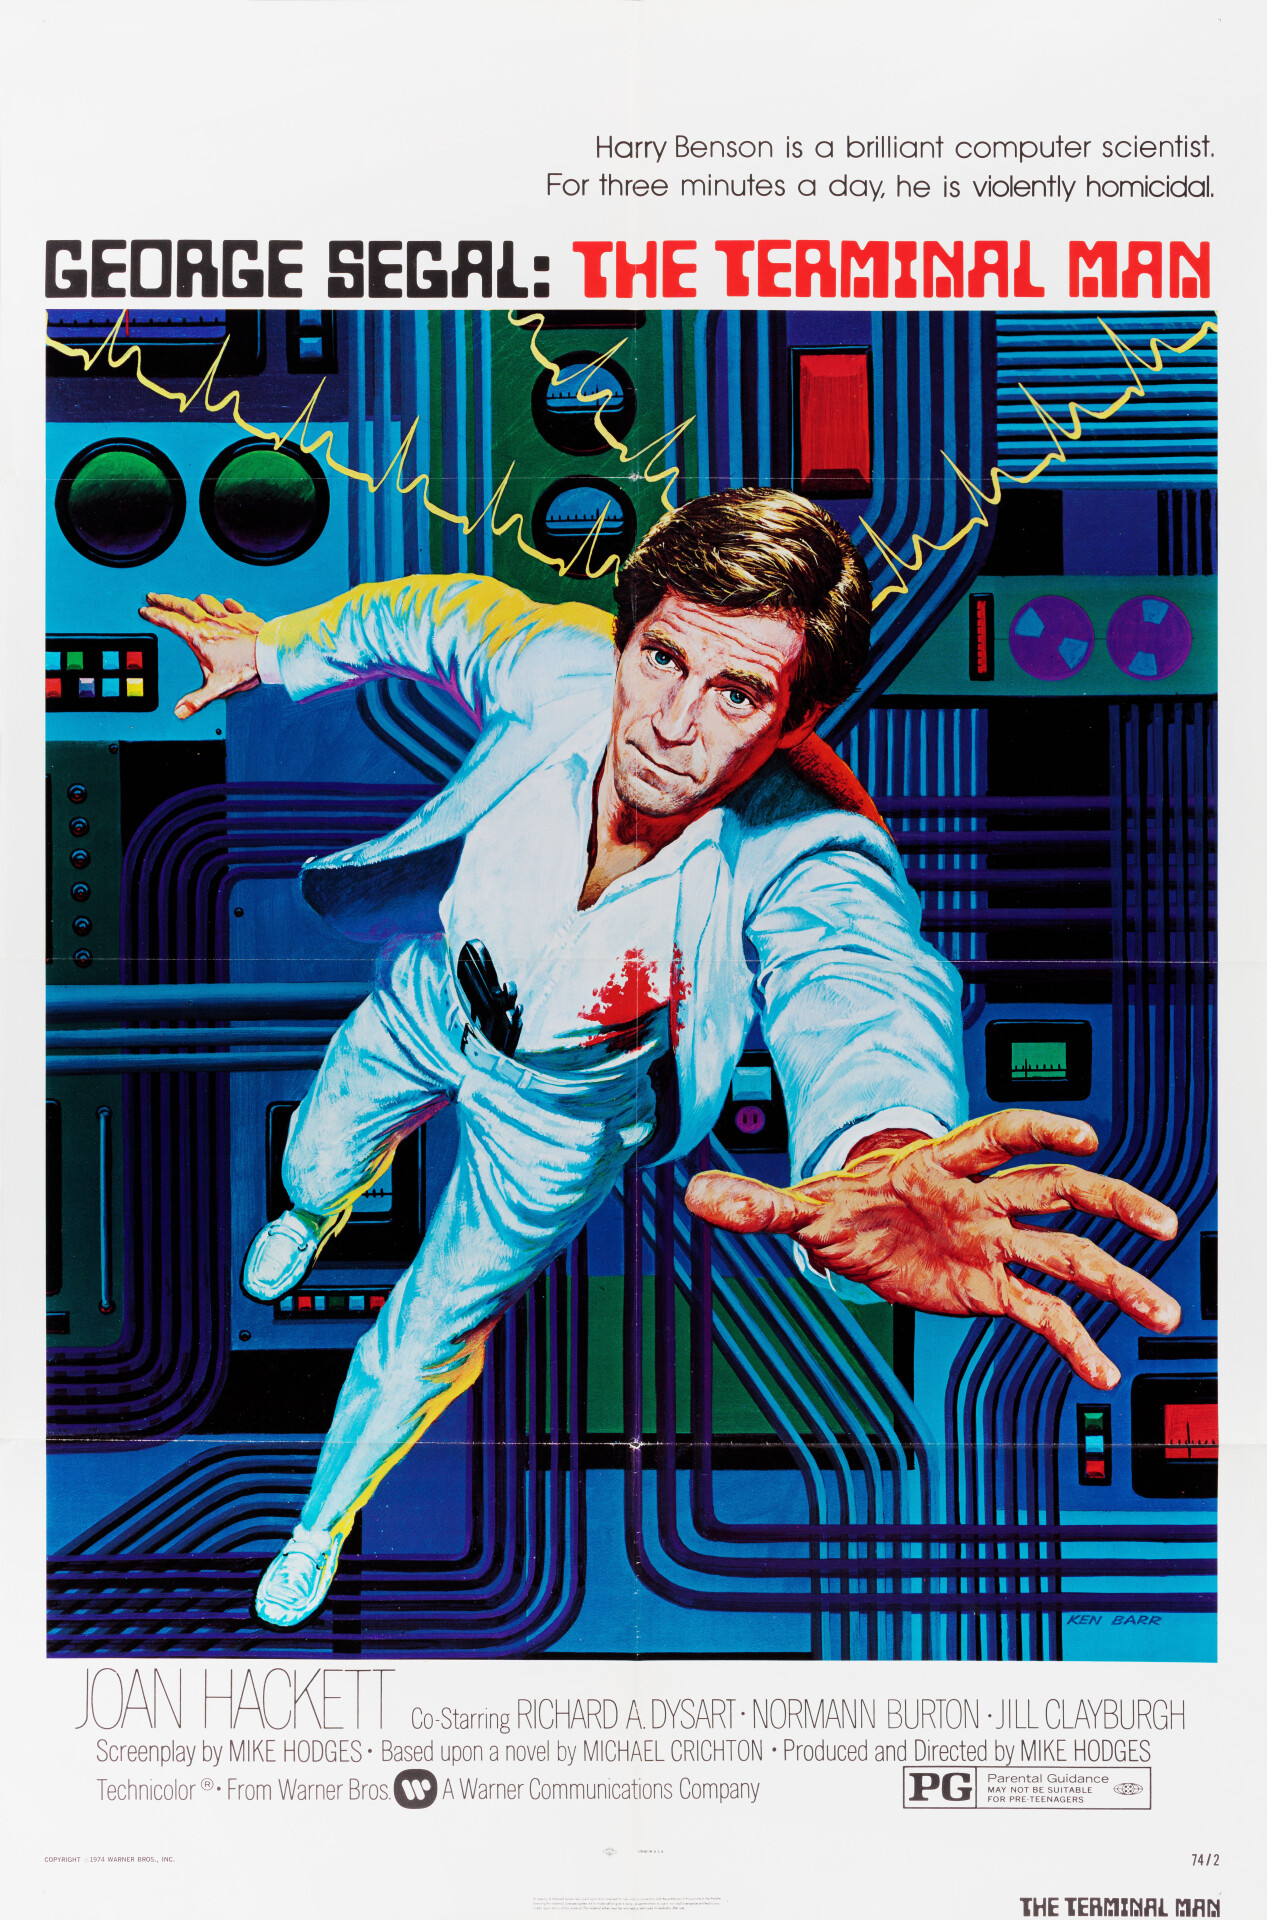 Человек, несущий смерть (The Terminal Man, 1974), режиссёр Майк Ходжес, американский постер к фильму, автор Кен Барр (графический дизайн, 1974 год)